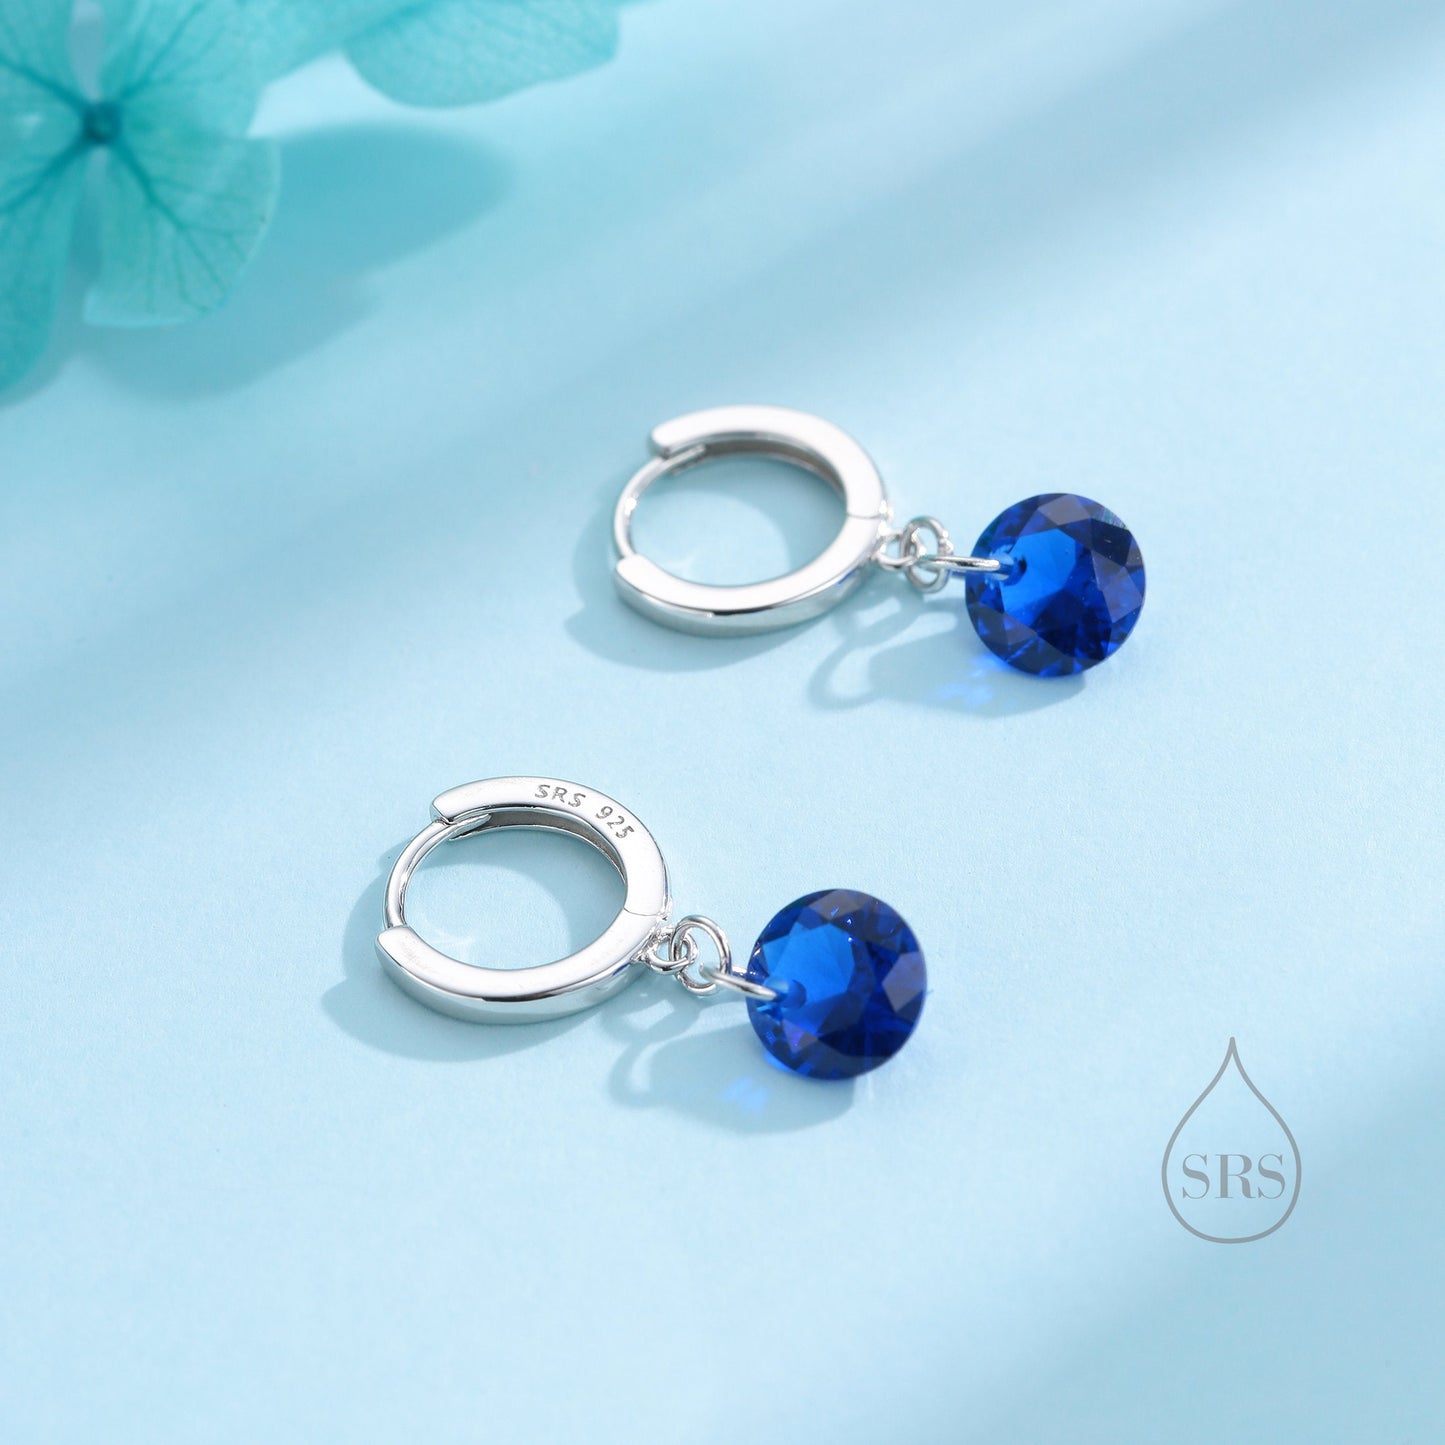 Dangle Sapphire Blue CZ Huggie Hoop Earrings in Sterling Silver, Silver or Gold, Delicate Sparky  CZ Skinny Hoops, Dark Blue Crystal Hoops